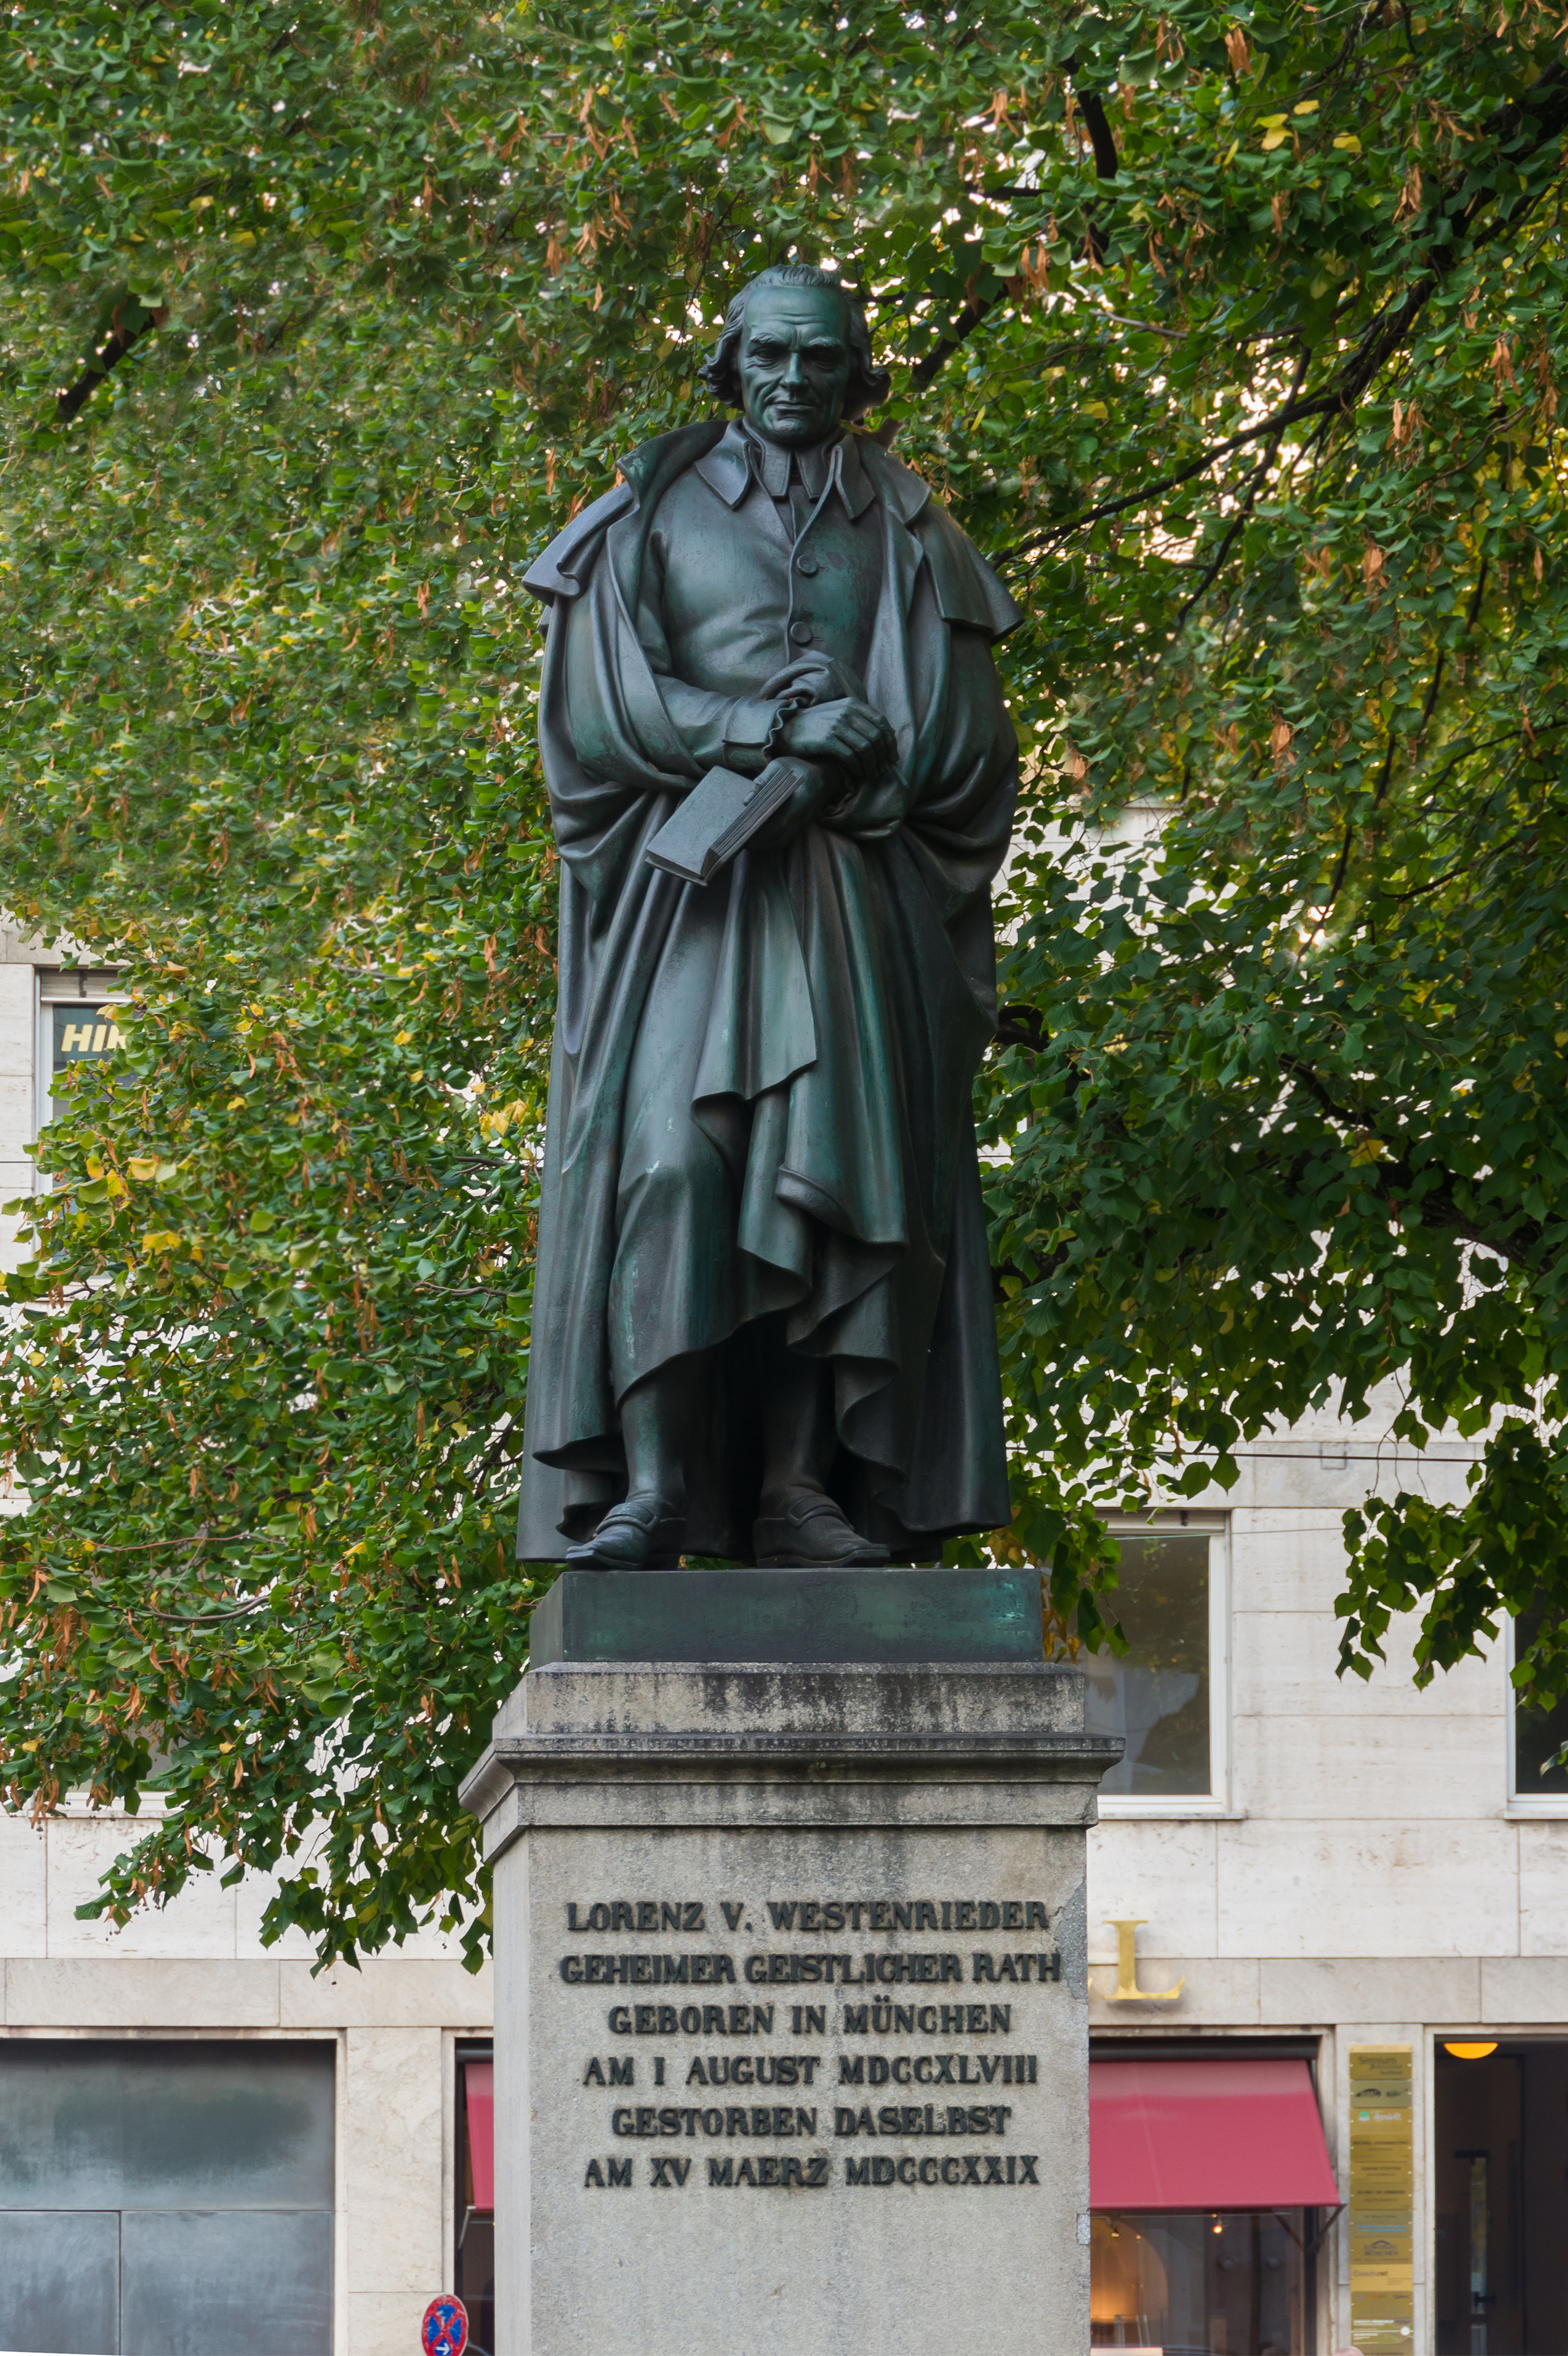 Lorenz von Westenrieder statue Promenadeplatz Munich